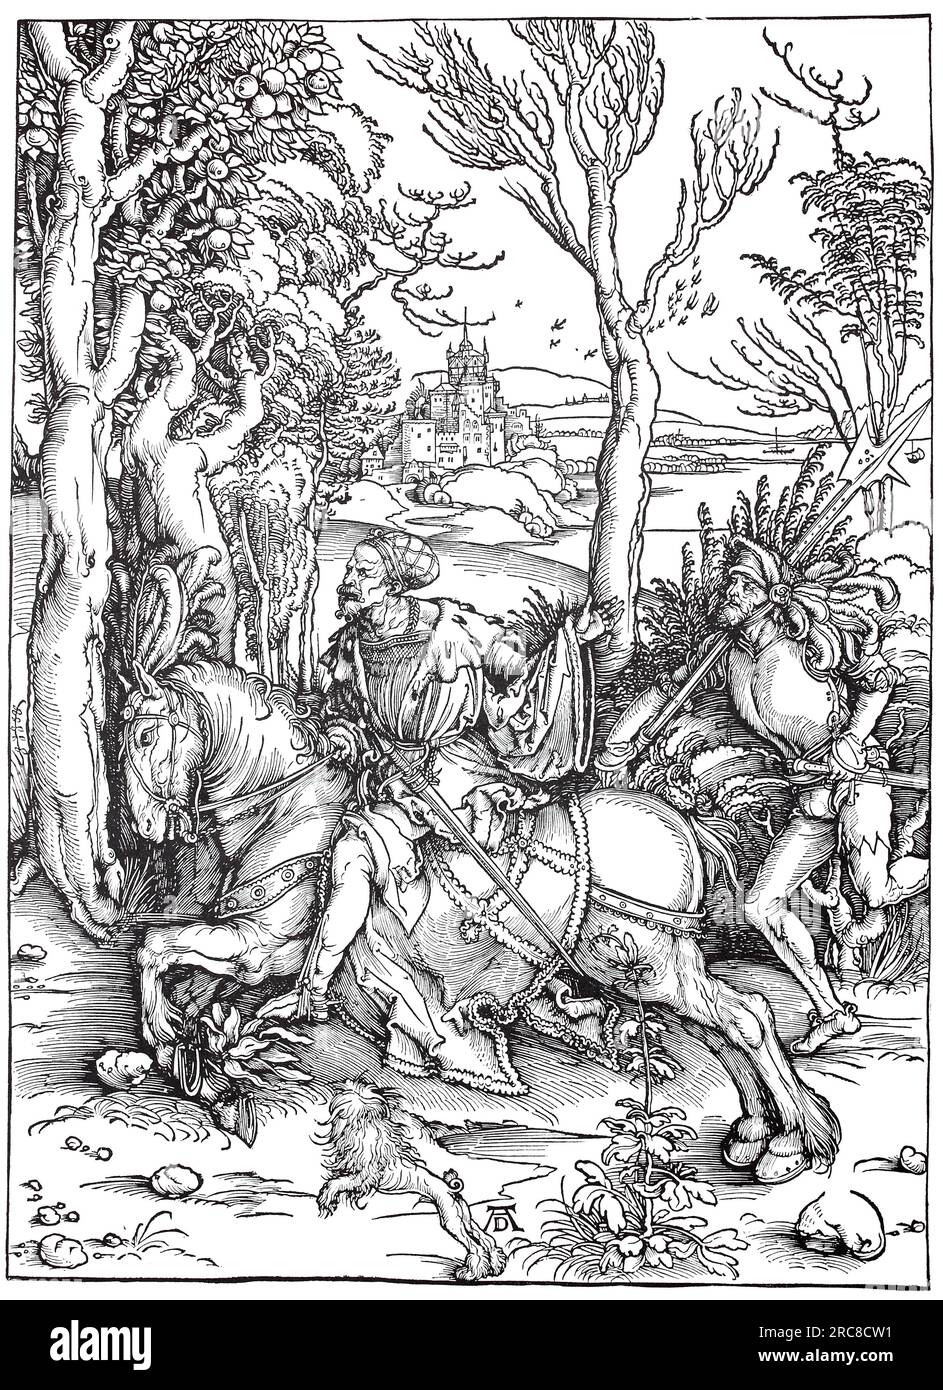 Cavaliere e Landsknecht, tagliato in legno da Albrecht Dürer, storica, digitale riproduzione migliorata di un vecchio taglio di legno Foto Stock